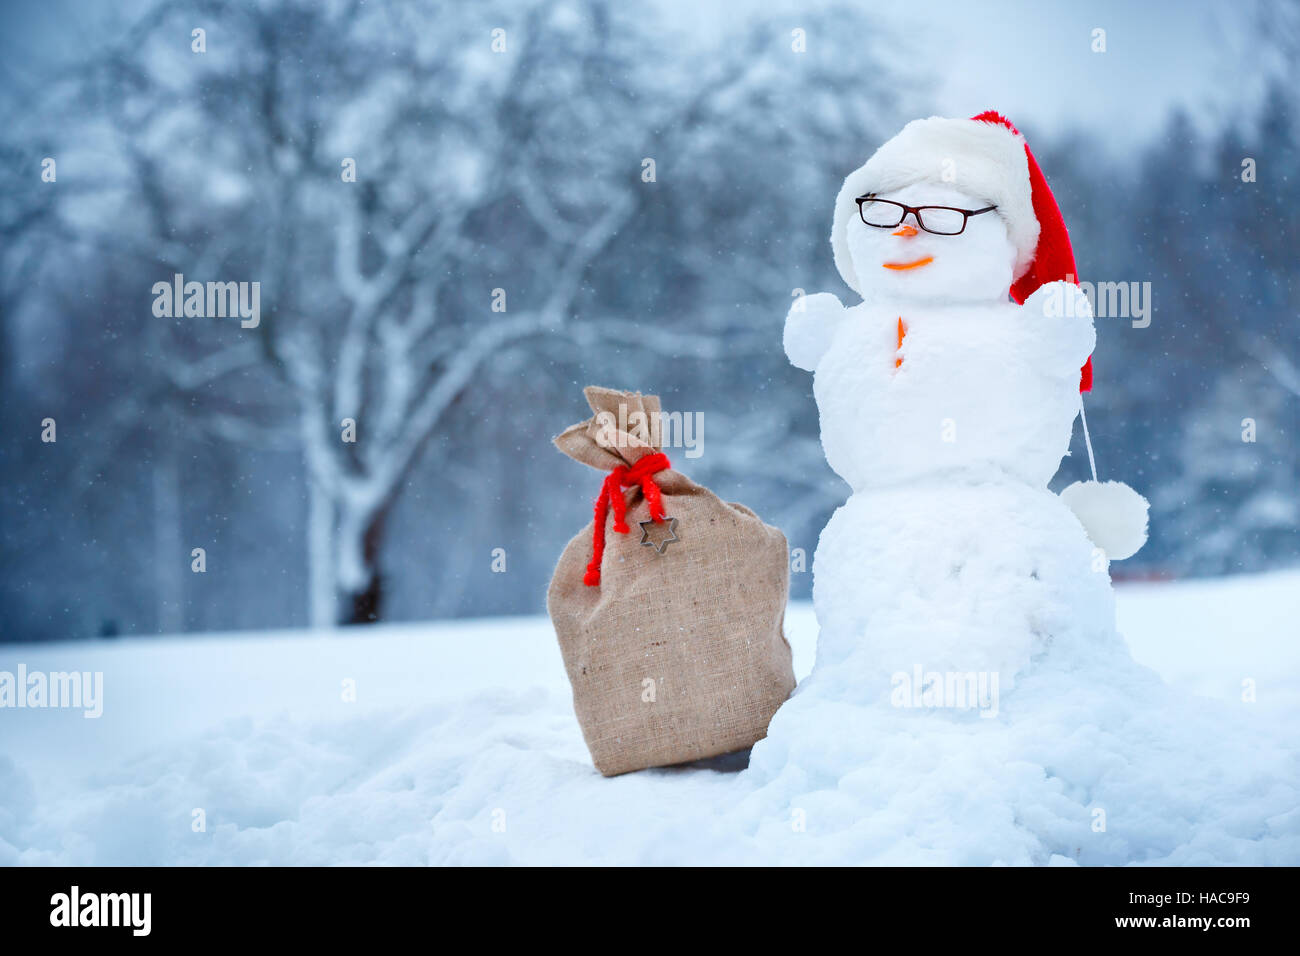 Muñeco de nieve en Santa sombrero y saco la bolsa en el día de invierno Foto de stock